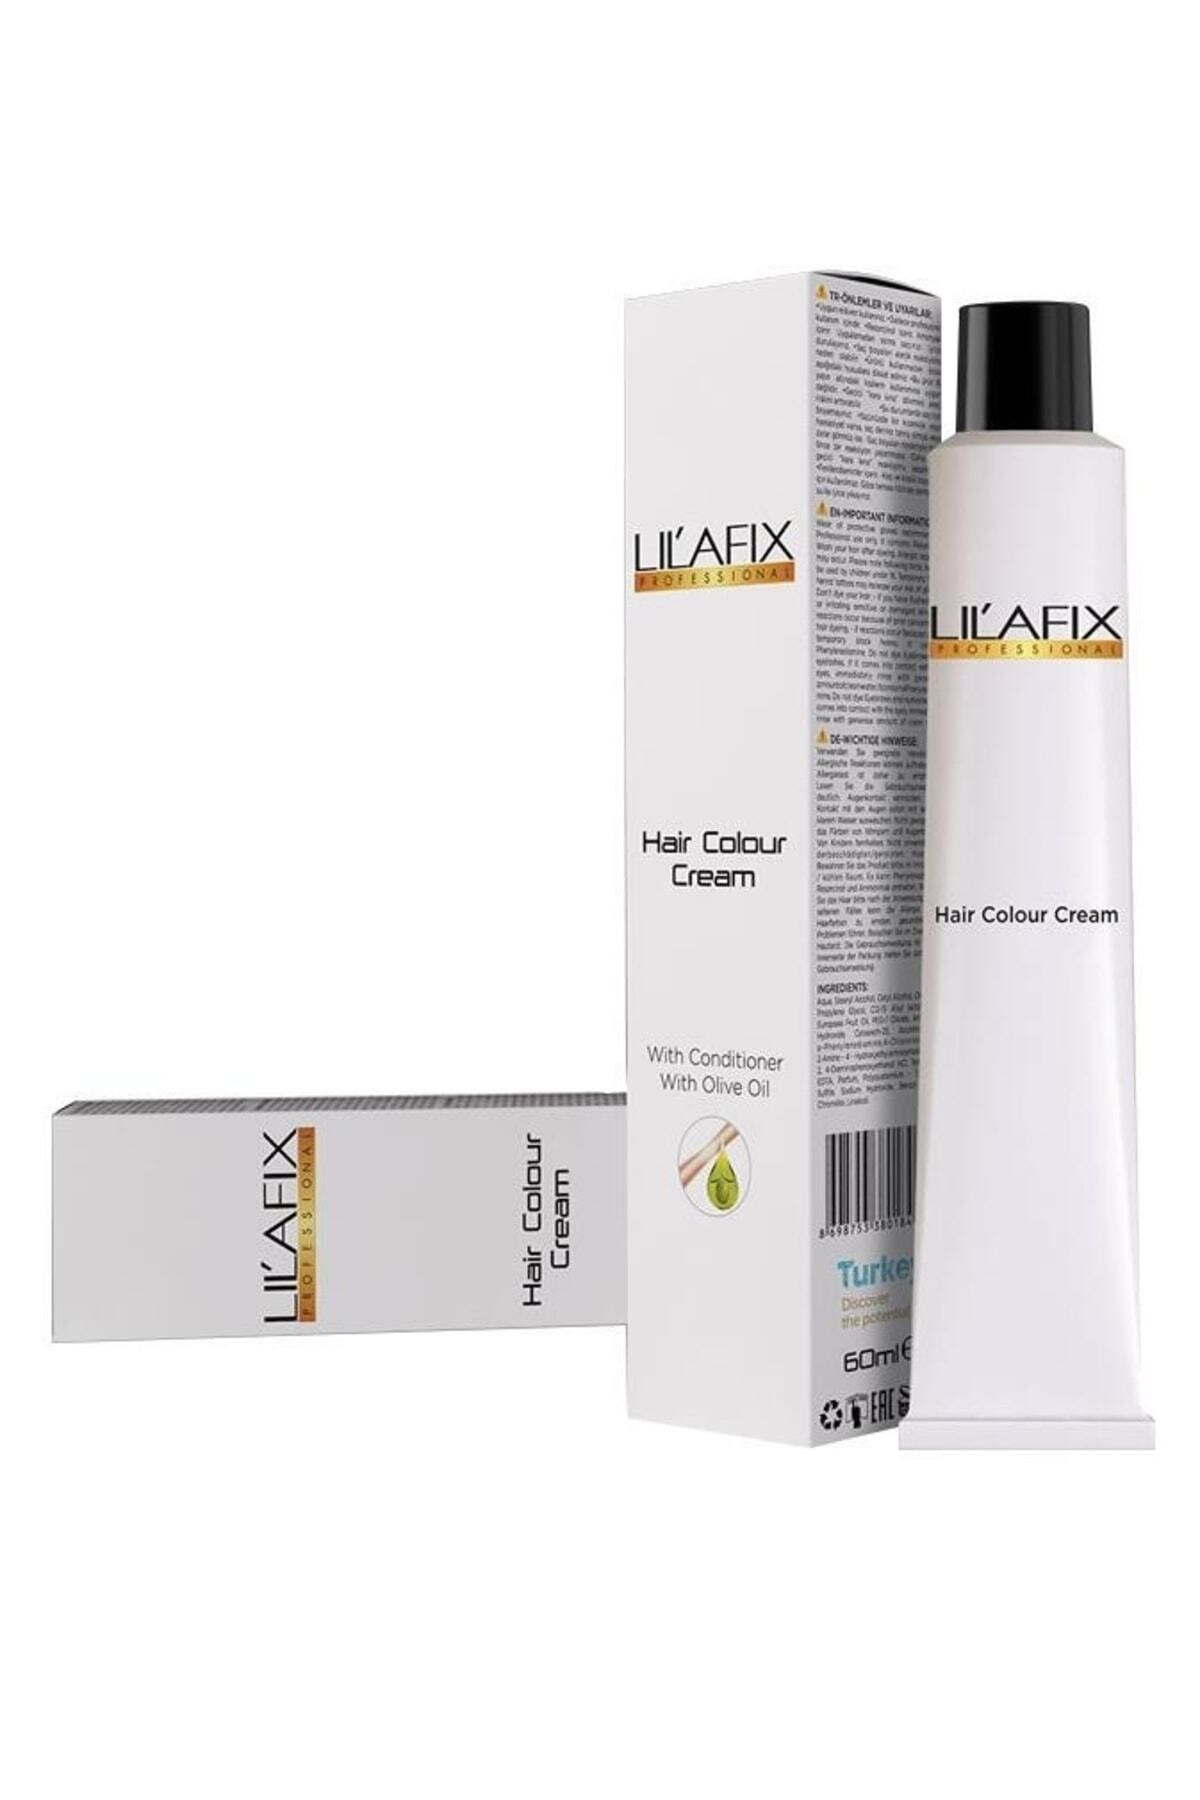 Lilafix Permament Hair Color Cream Natural Appearance 10/95 Cool Rose 60ml Buk88